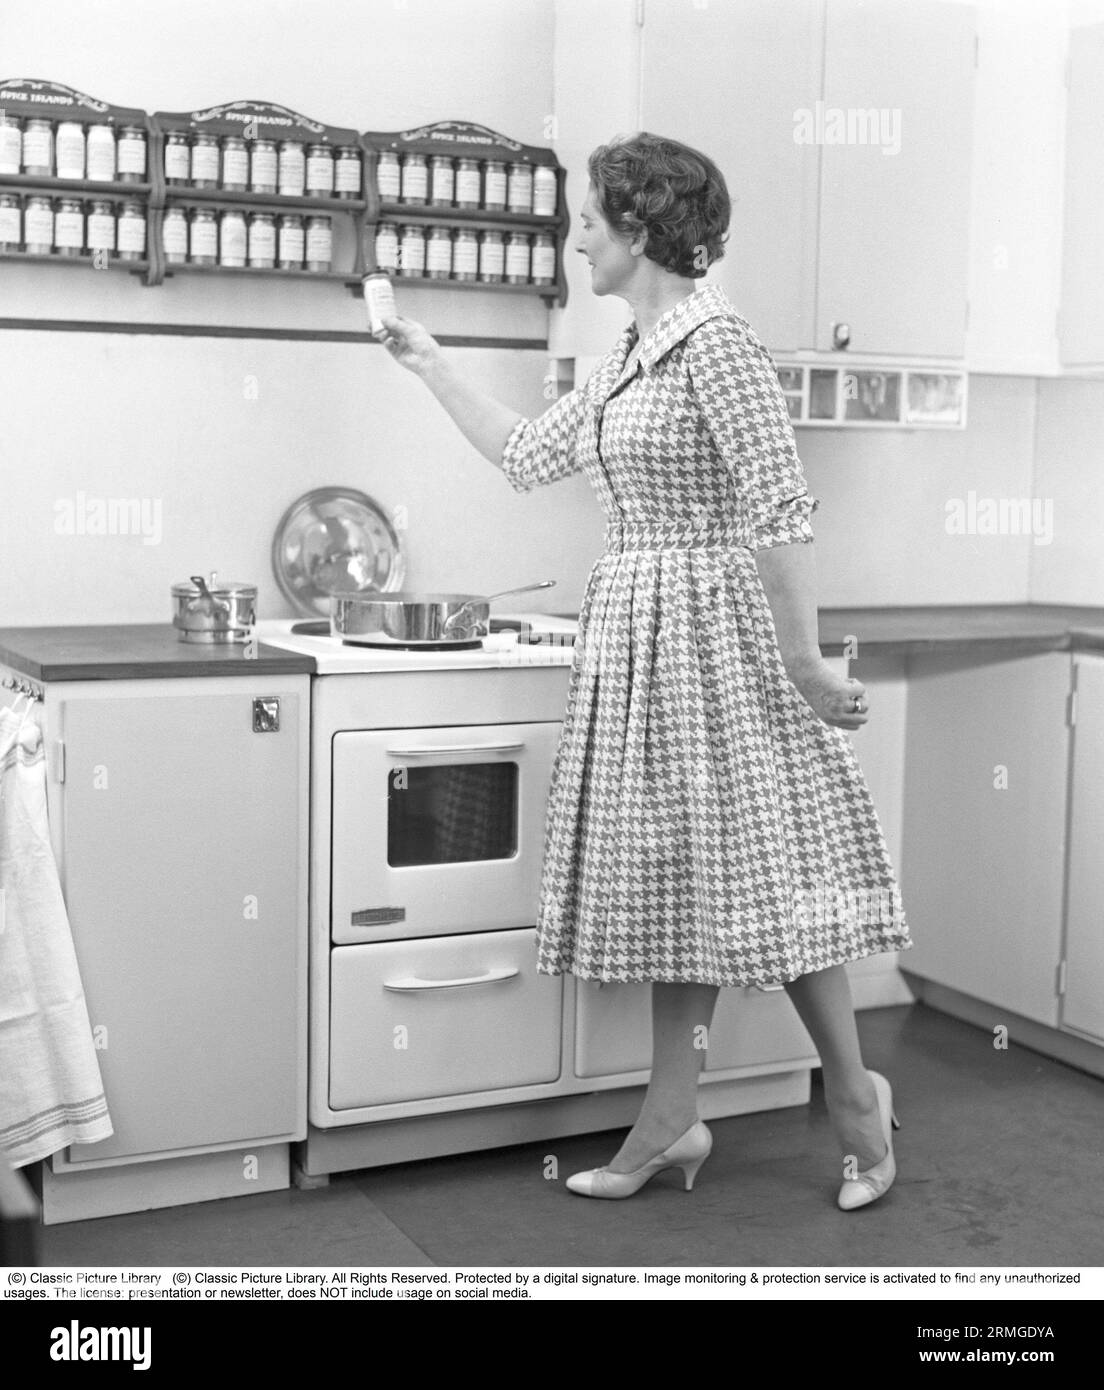 Dans les années 1950 Une femme dans une cuisine typique des années 1950 avec des armoires en bois et un ensemble d'épices sur des étagères au-dessus de la cuisinière. Elle tient une boîte d'épices dans sa main et la regarde. Suède 1959. Kristoffersson réf CE103-3 Banque D'Images